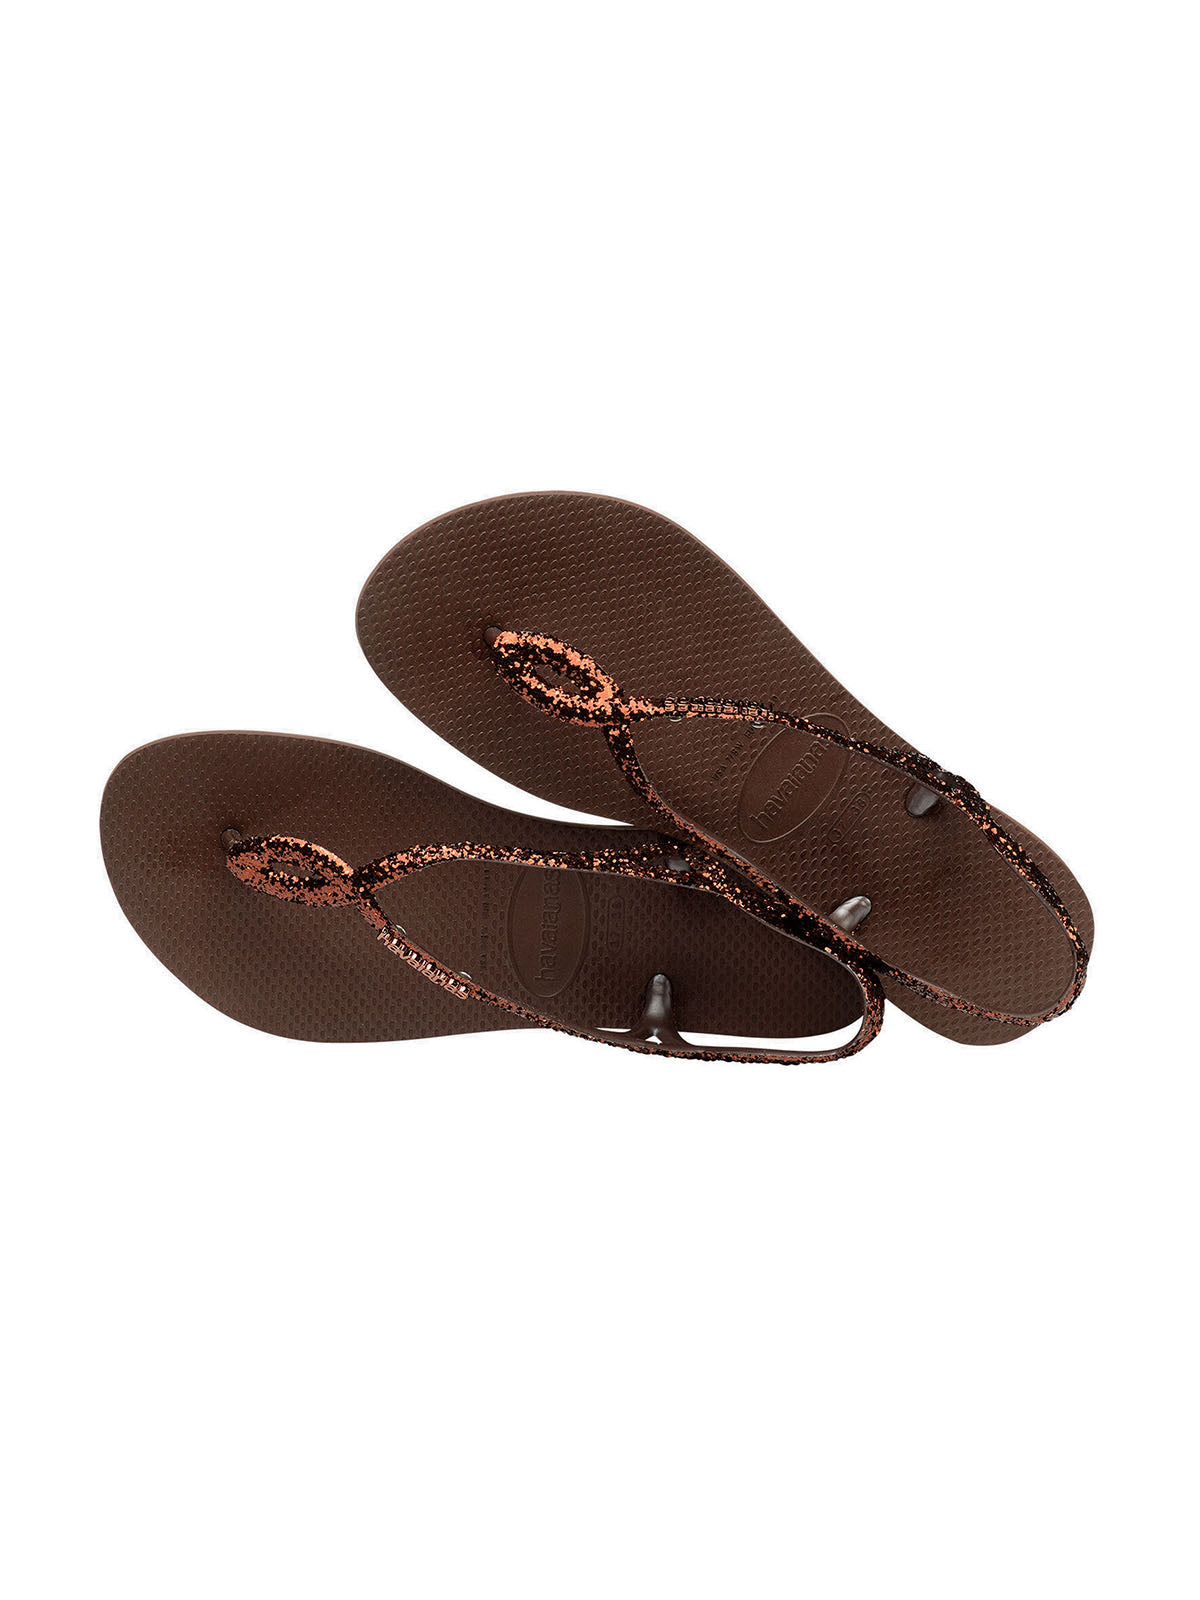 Havaianas Women's Sandals - Havaianas Luna Premium Ii - Brown